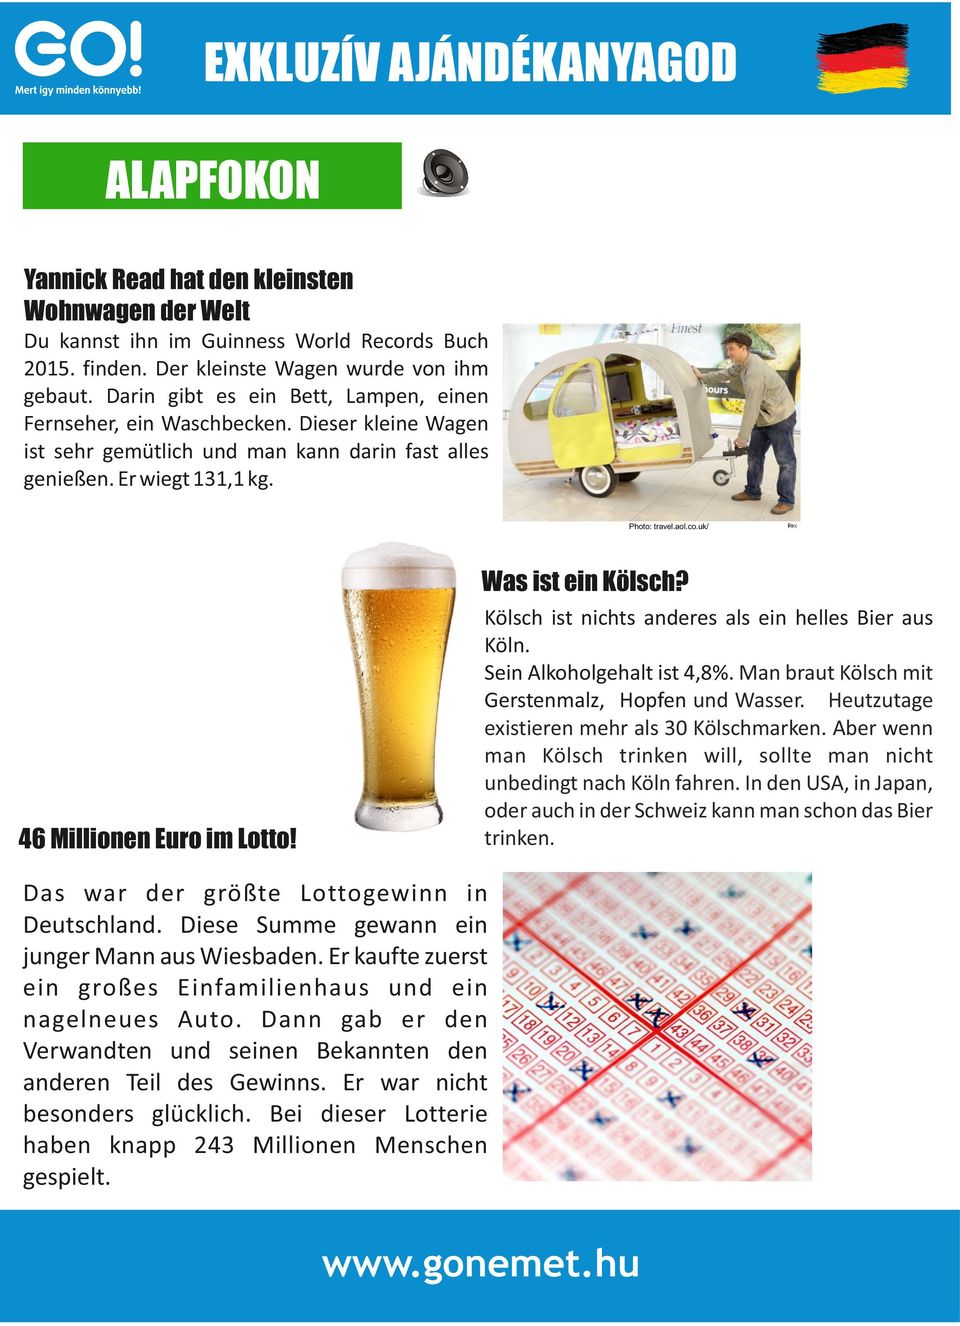 uk/ Was ist ein Kölsch? 46 Millionen Euro im Lotto! Kölsch ist nichts anderes als ein helles Bier aus Köln. Sein Alkoholgehalt ist 4,8%. Man braut Kölsch mit Gerstenmalz, Hopfen und Wasser.